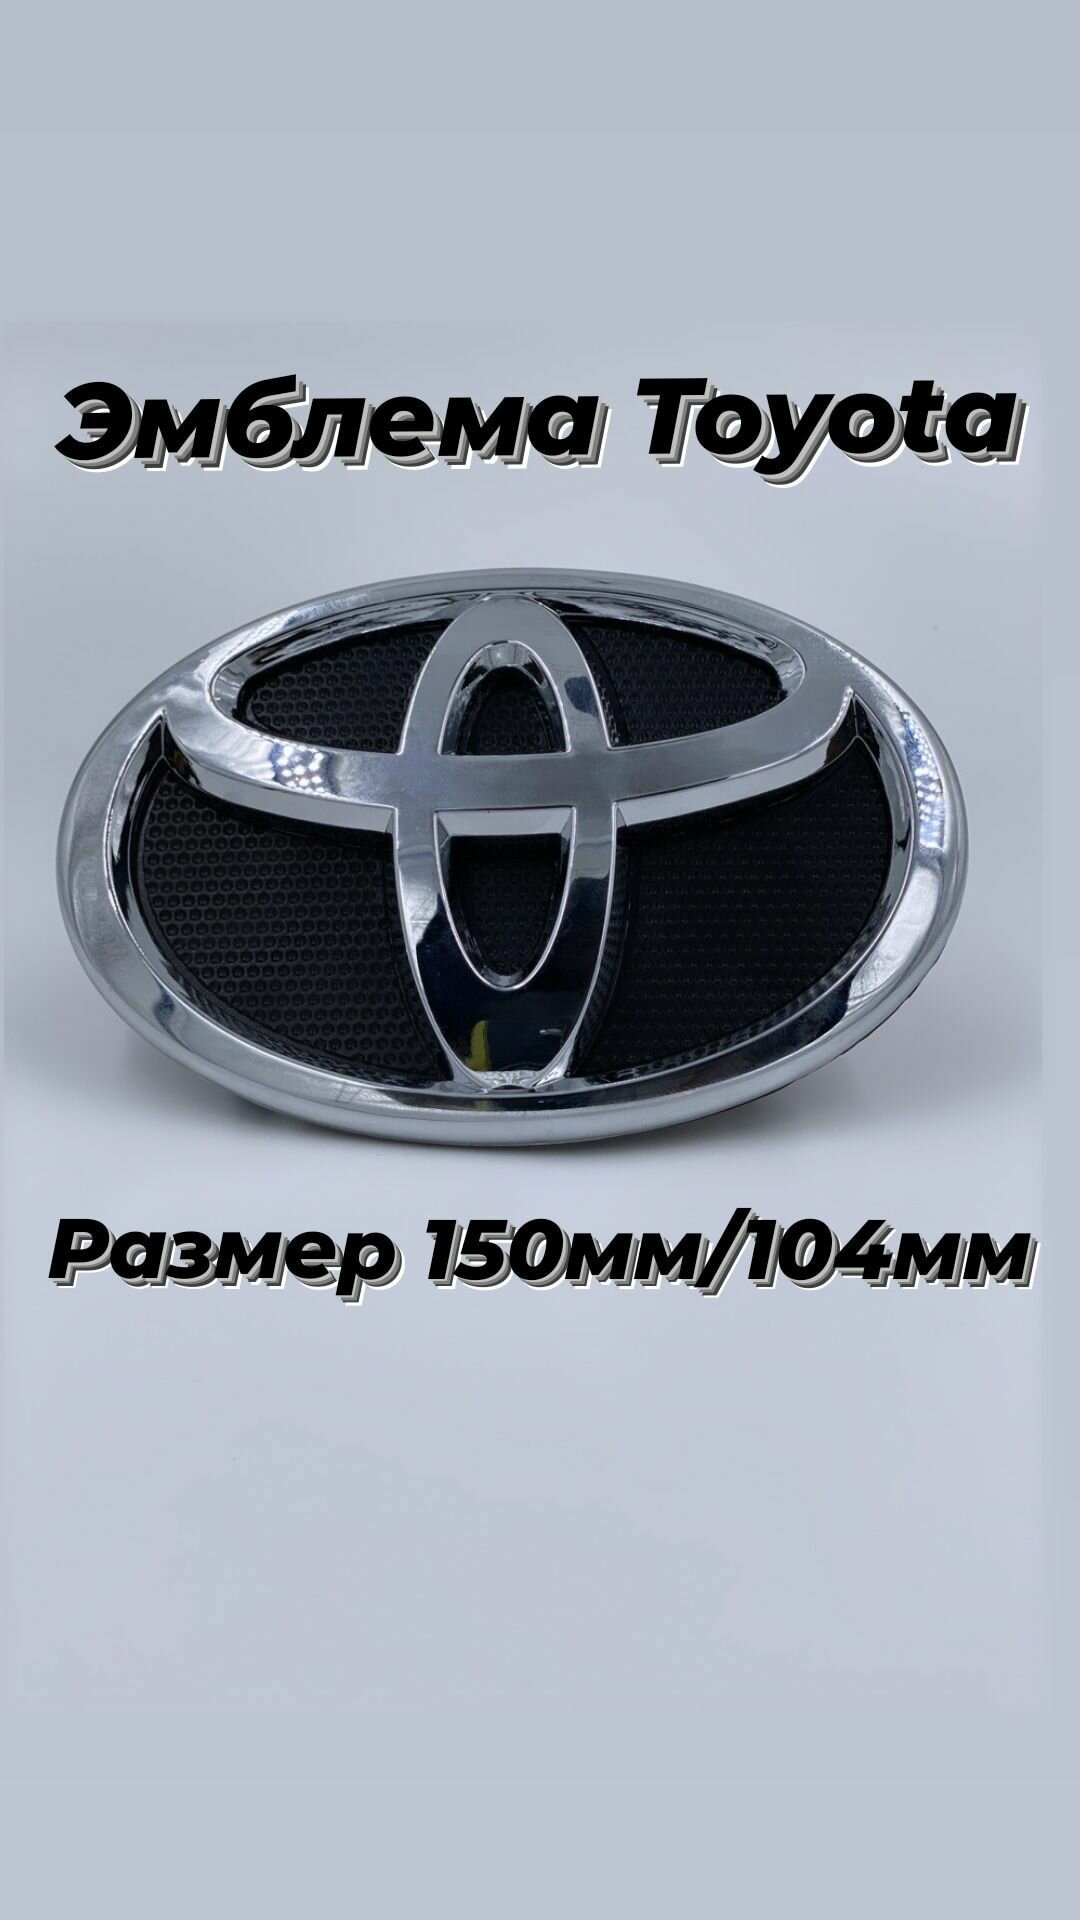 Эмблема Toyota / Тойота хром на черной подложке 15см x10 cм